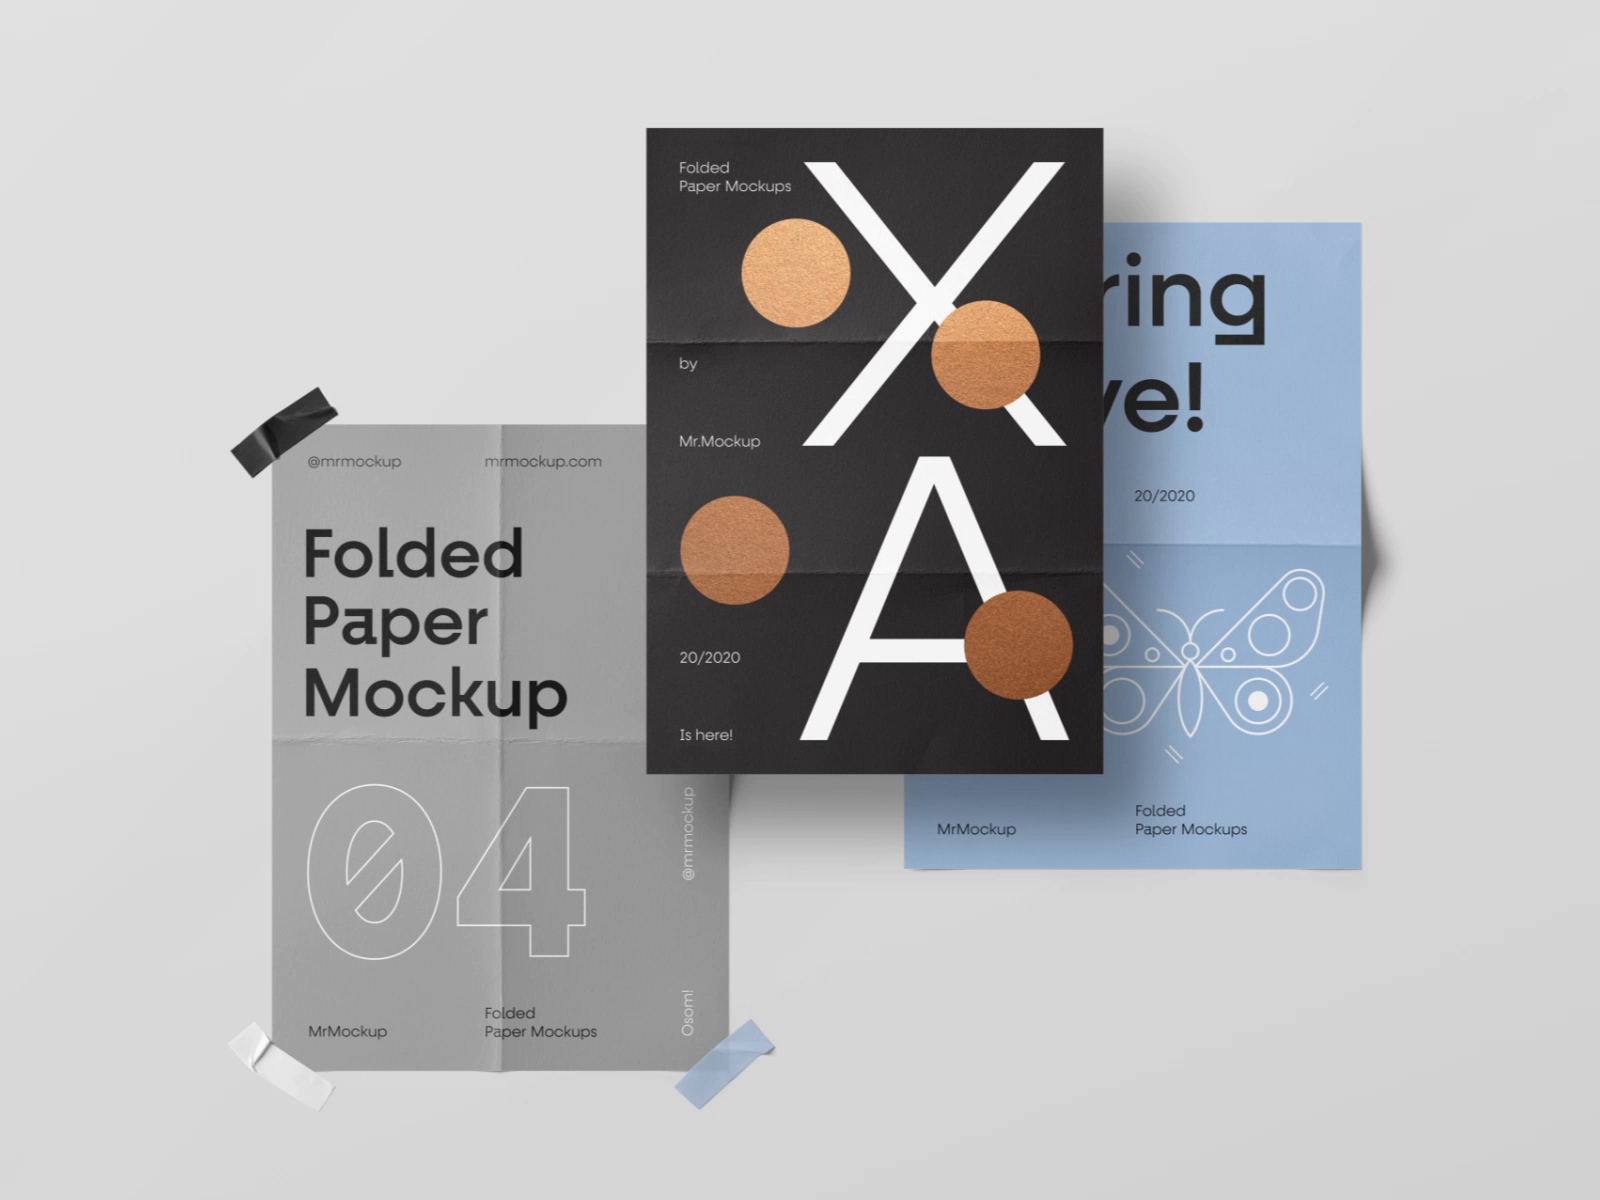 Download Folded Paper Mockups By Mr Mockup On Dribbble